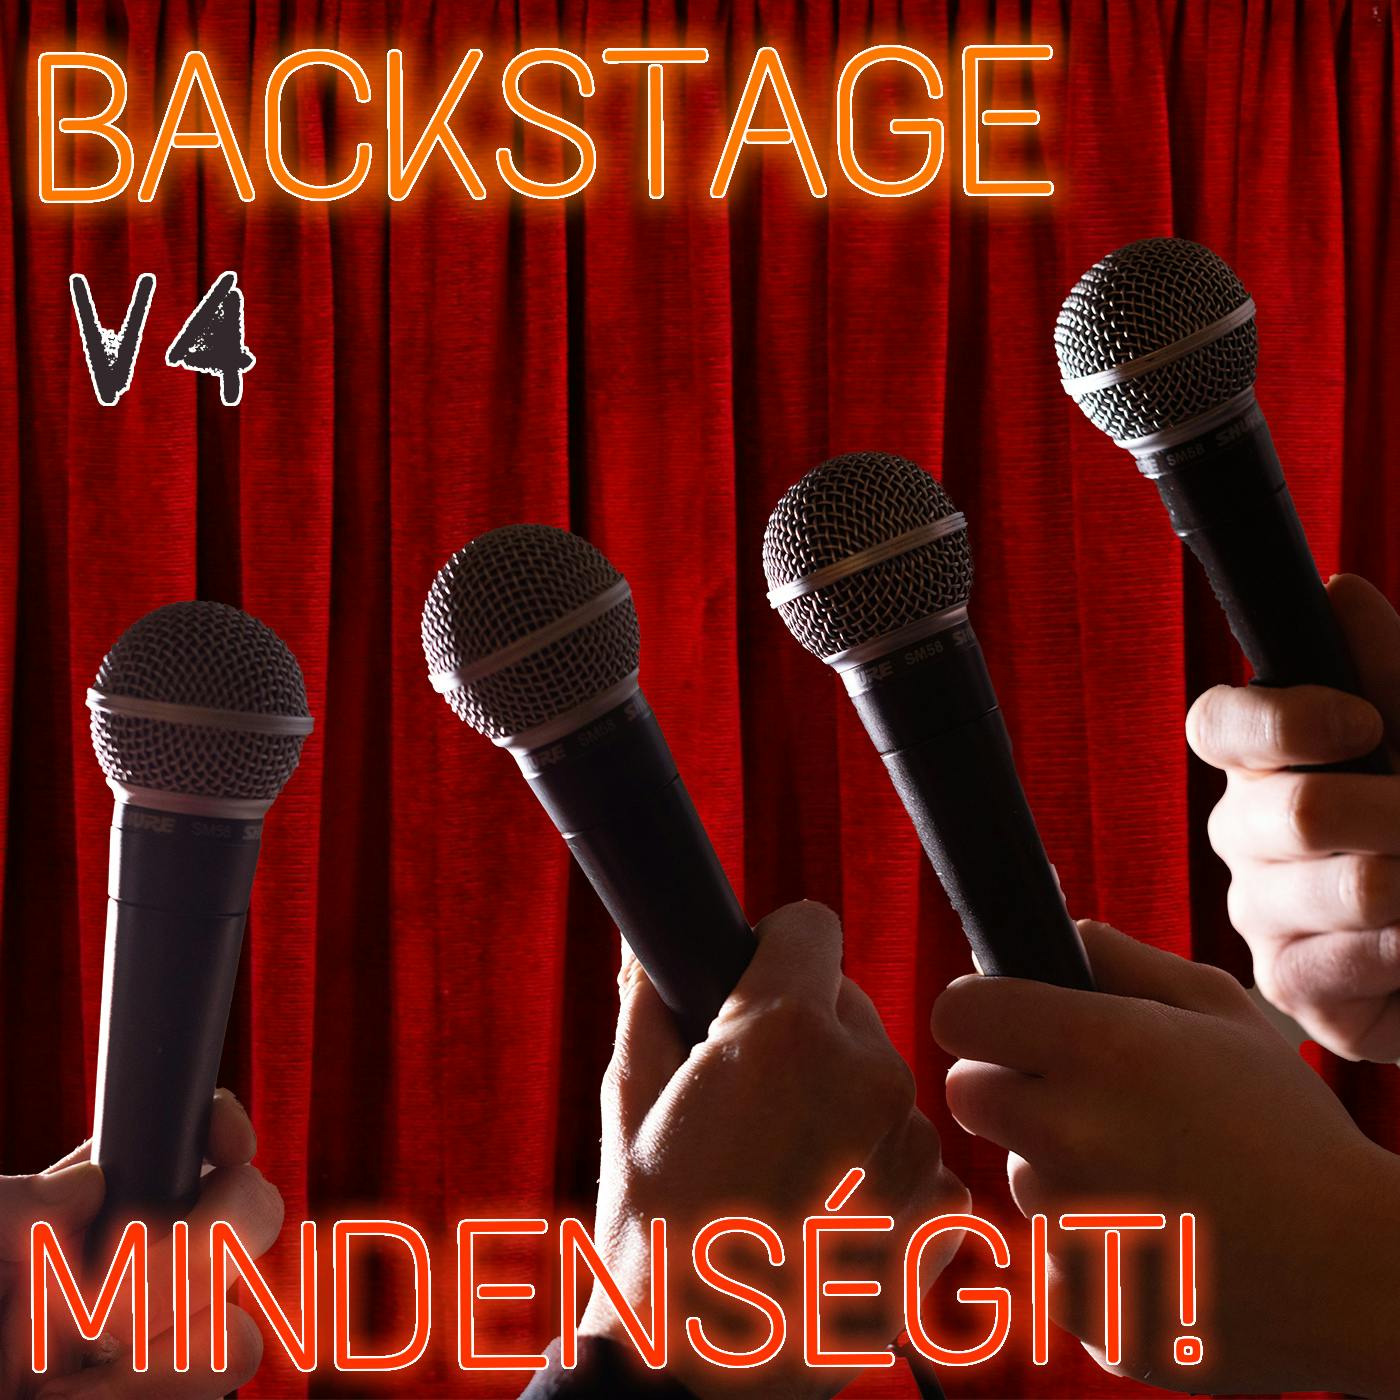 v4 - Mindenségit! Backstage